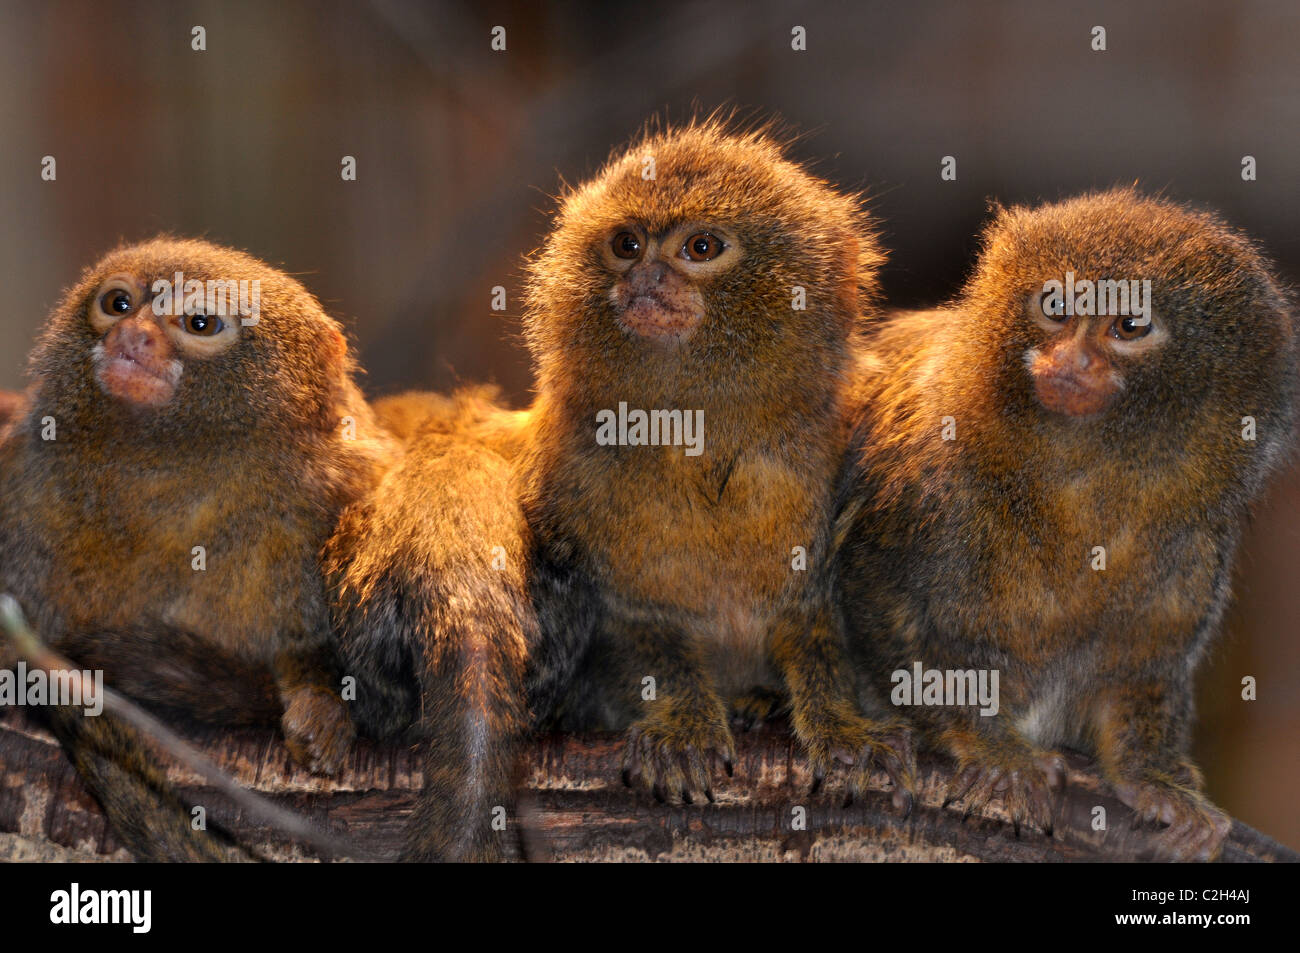 Pygmee-oeistities Callithrix pygmaea monkey Stock Photo